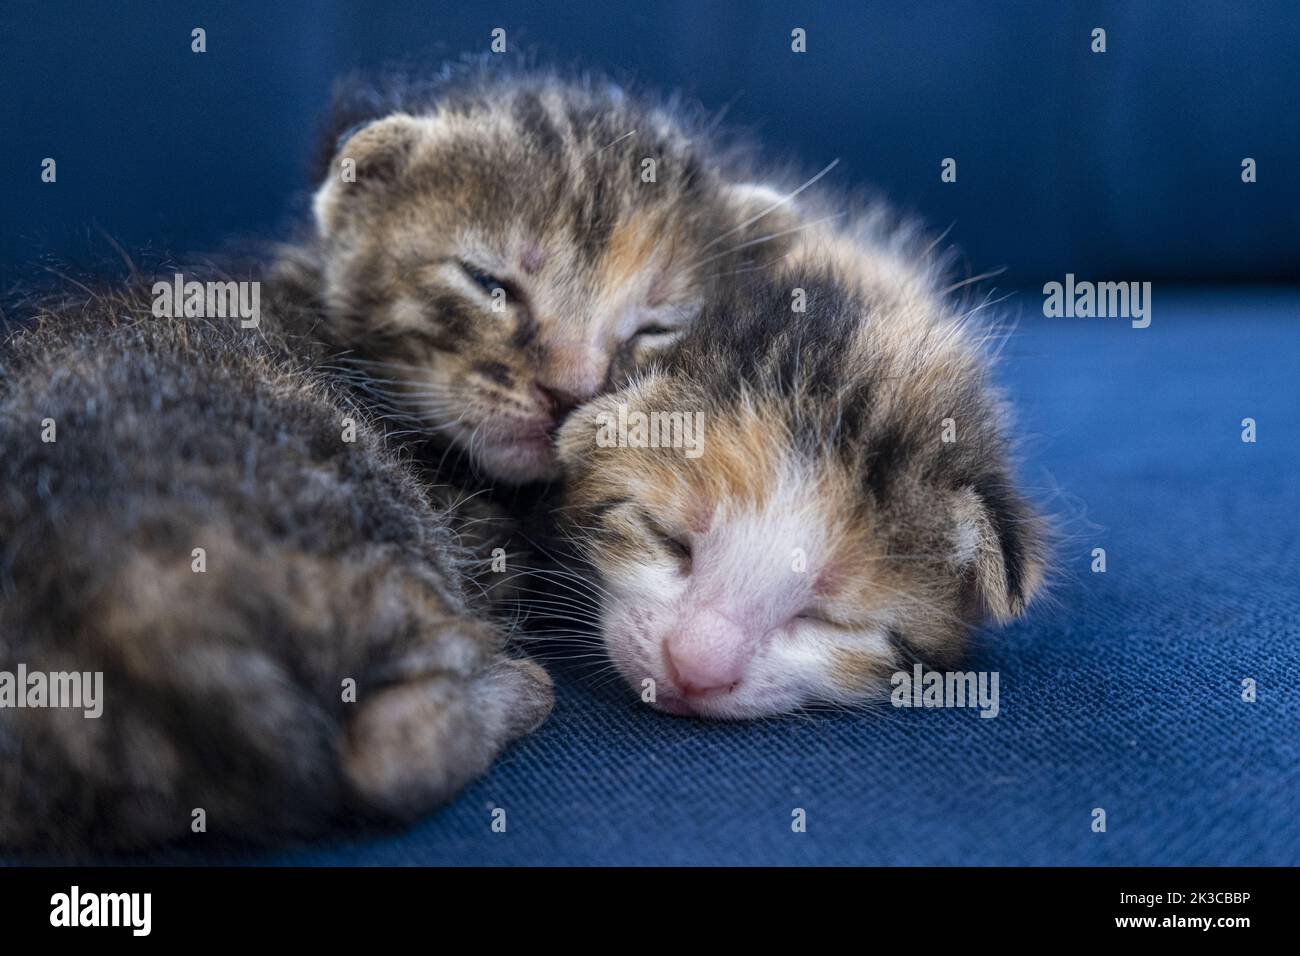 Deux chats calico tabby nouveau-nés s'embrassant et dormant, adorable chat nouveau-né, concept de chaton, petit chat à demi-œil ouvert Banque D'Images